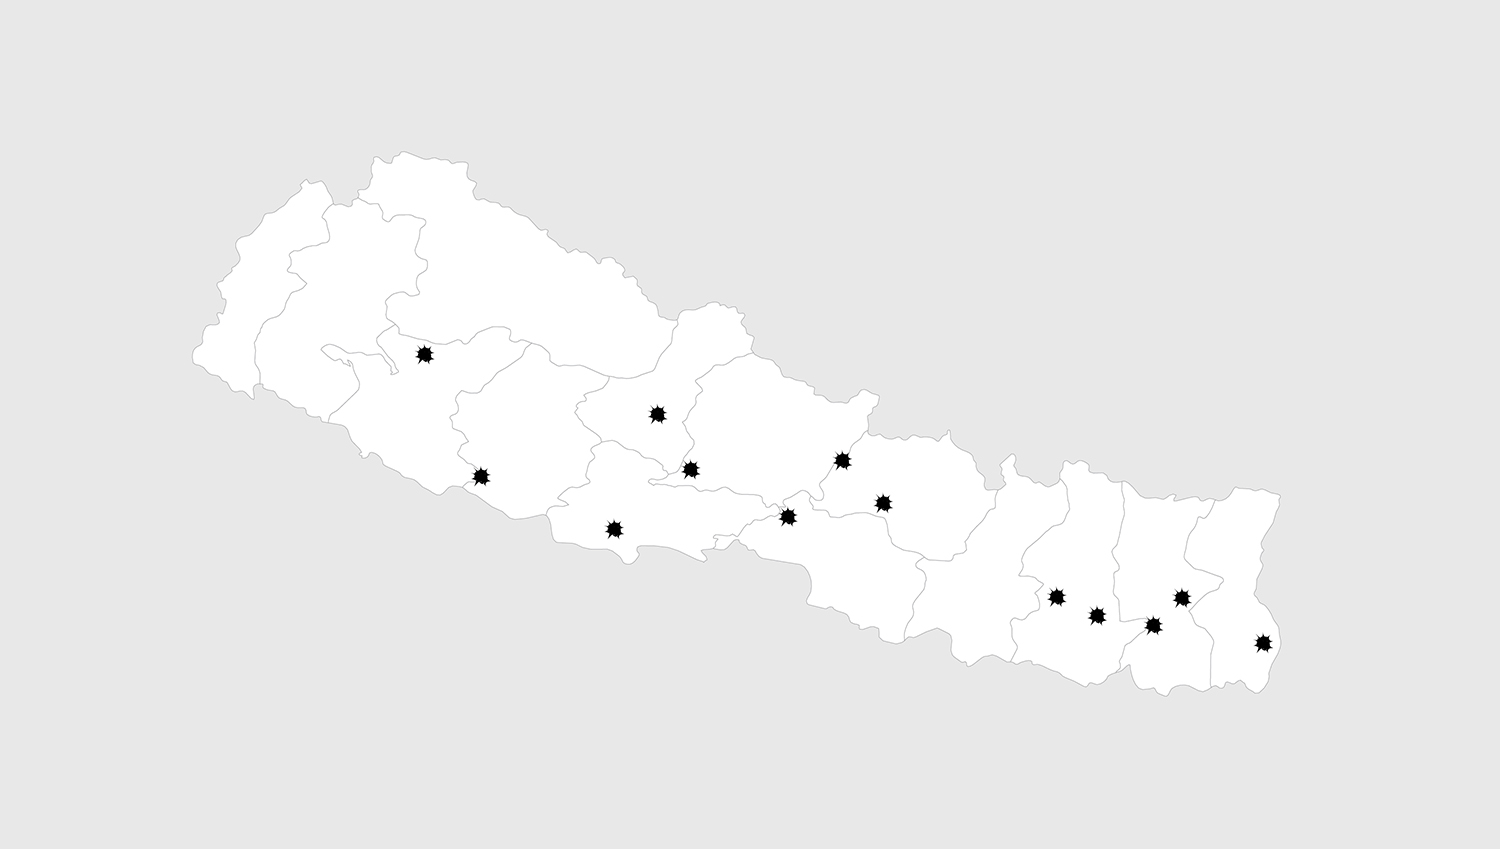 Nepal Map IED